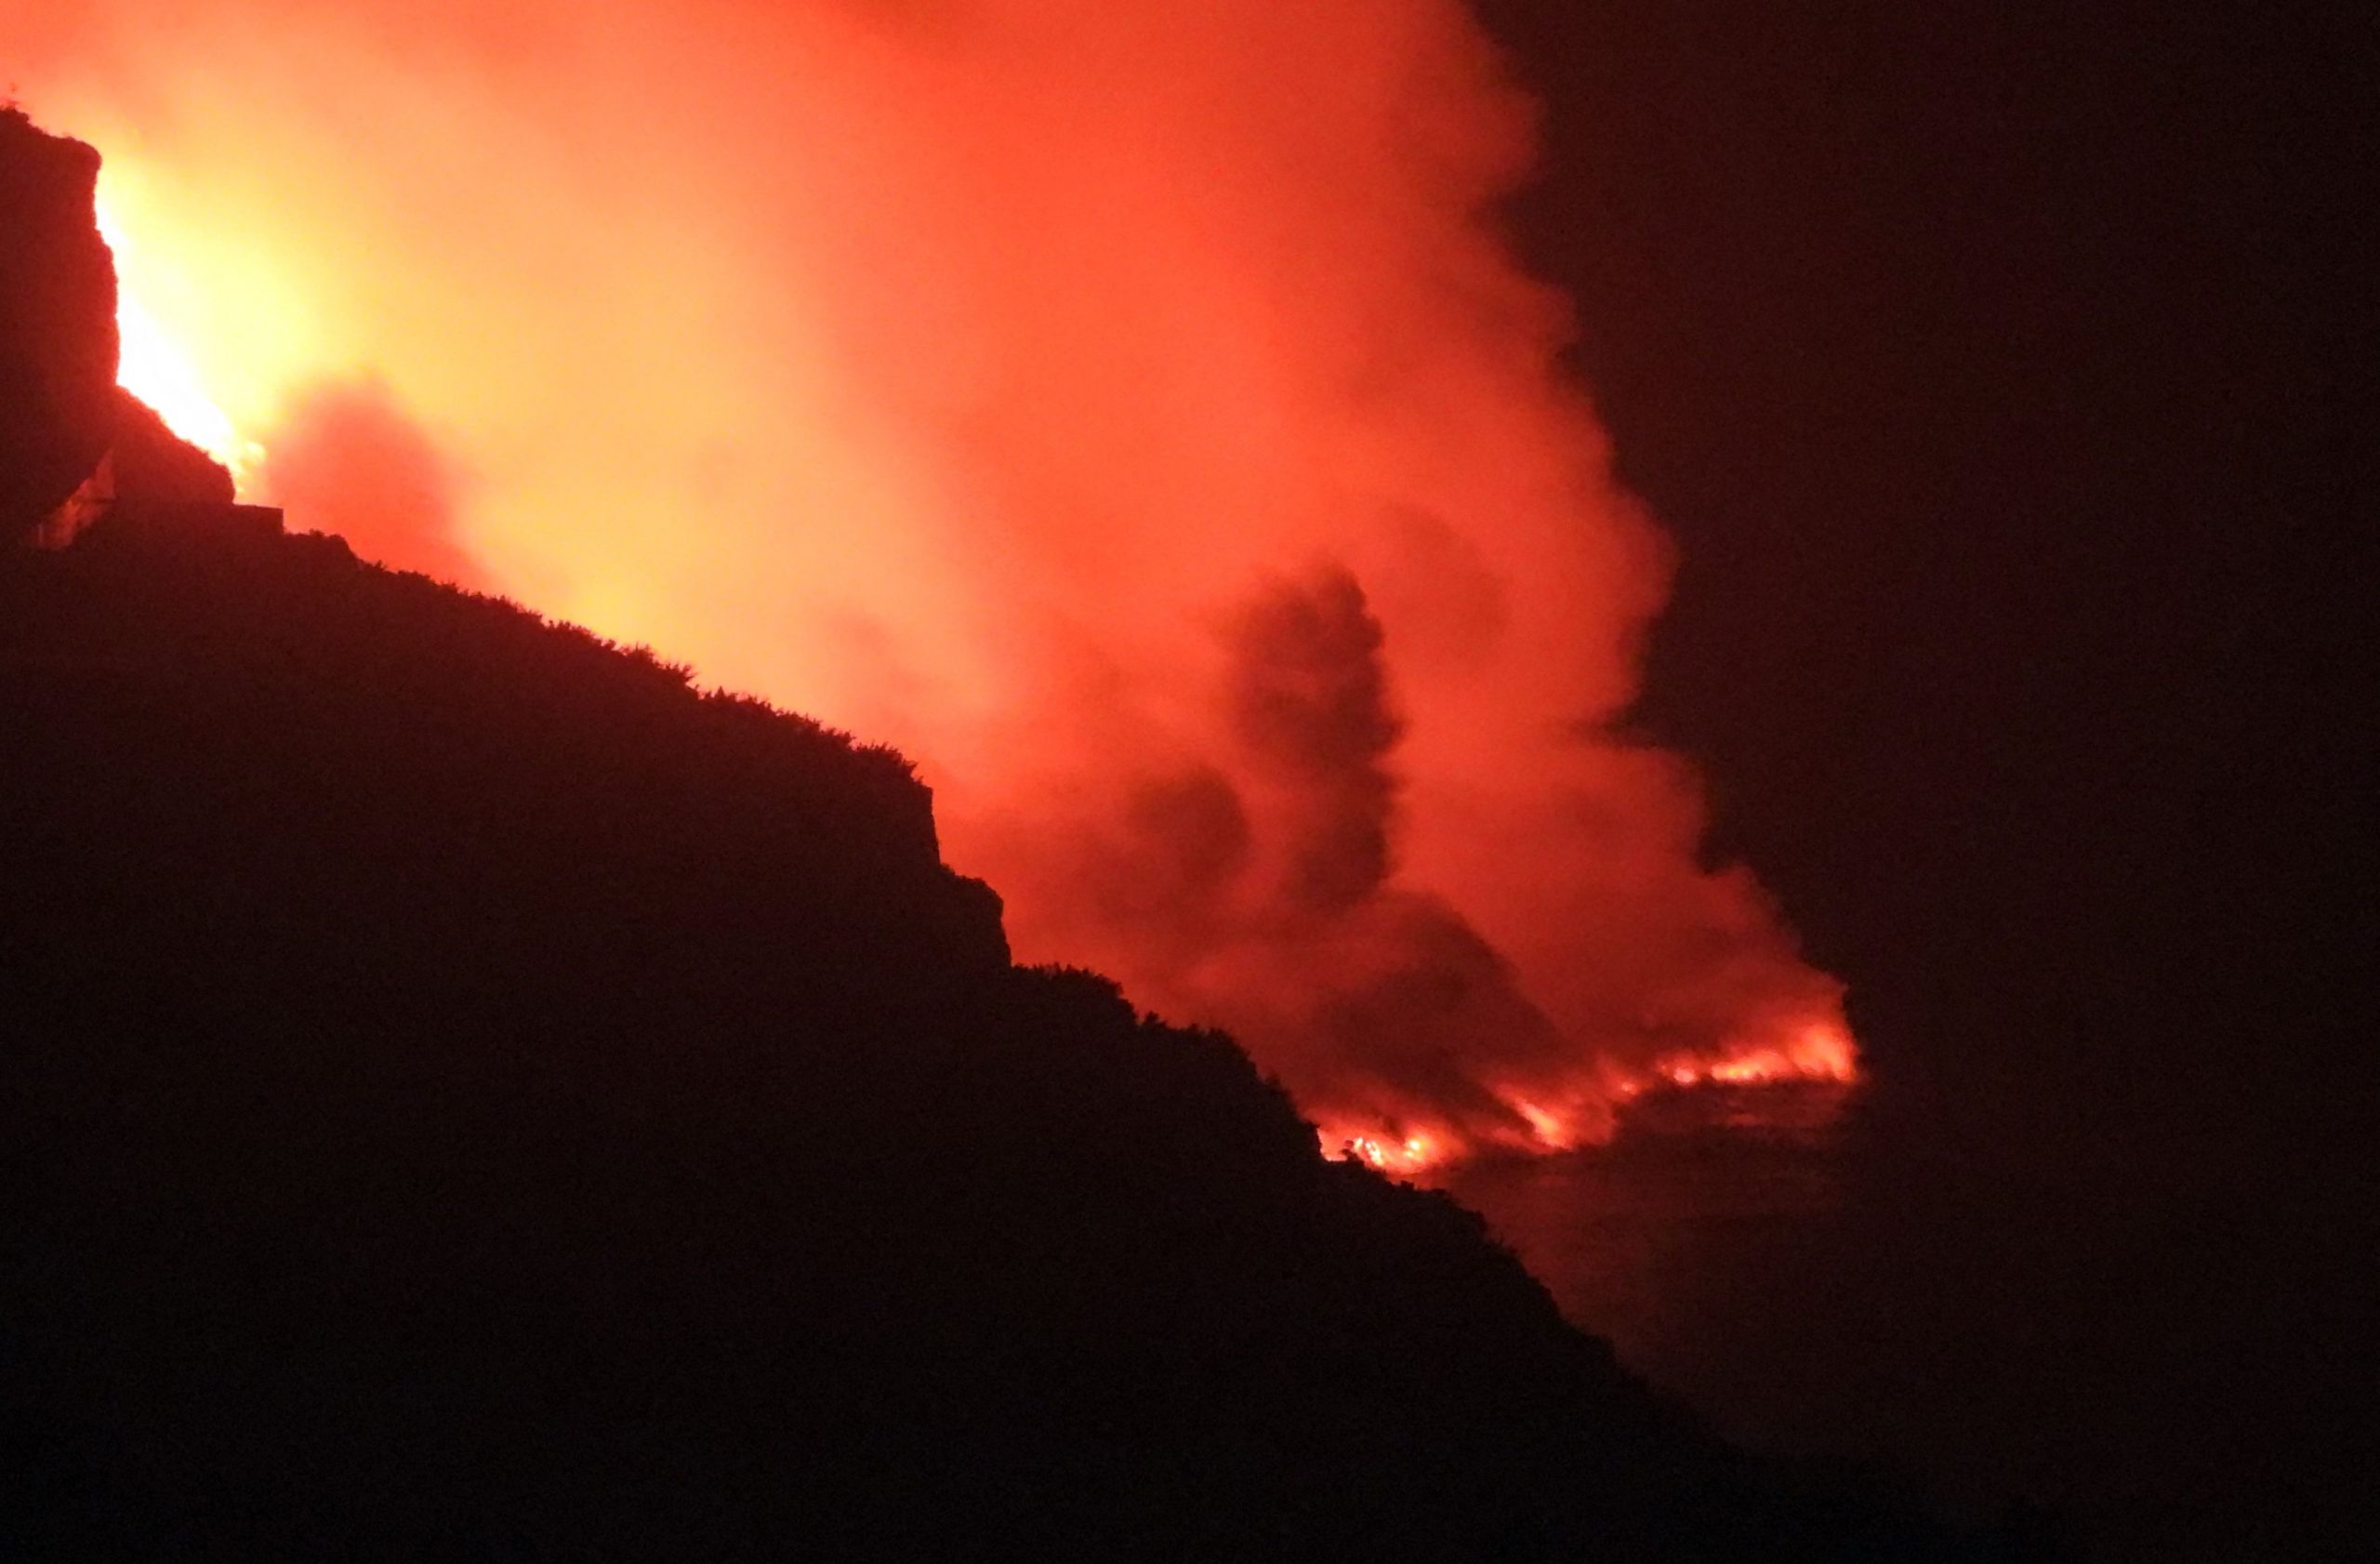 看世界 拉帕尔马岛火山喷发第9日　熔岩开始流入大西洋 释出毒气